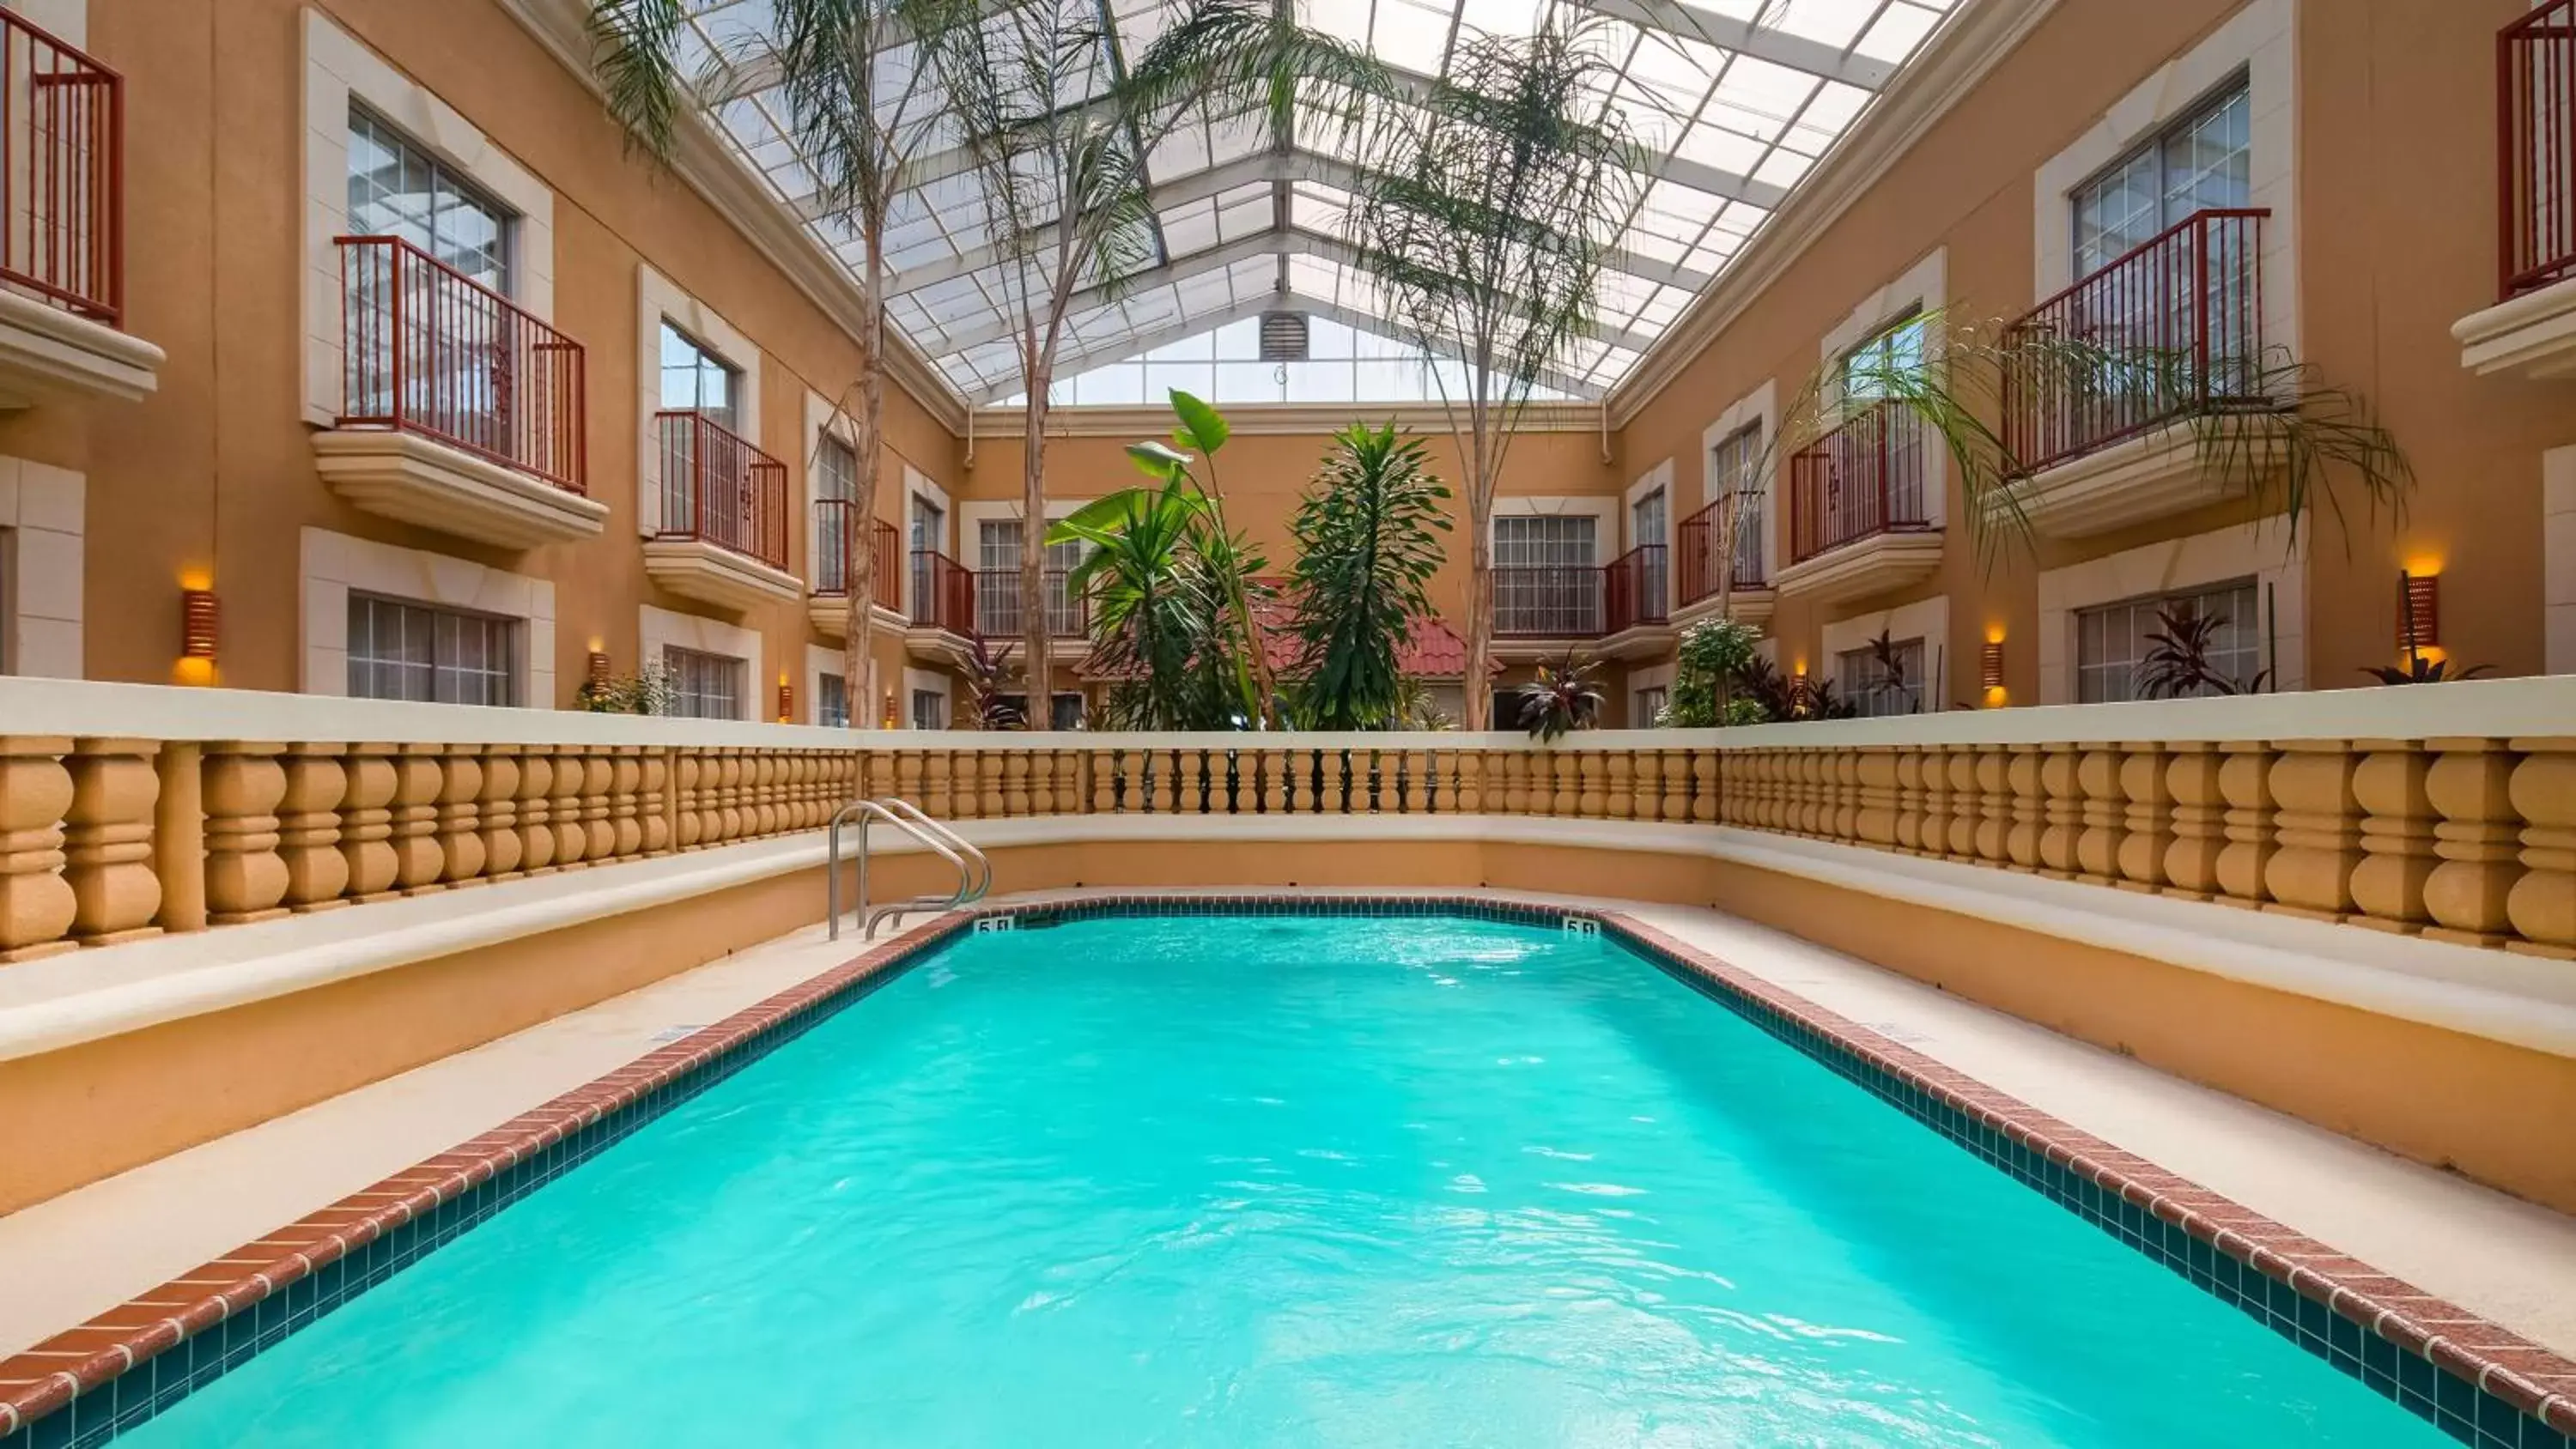 On site, Swimming Pool in Best Western Plus Atrium Inn